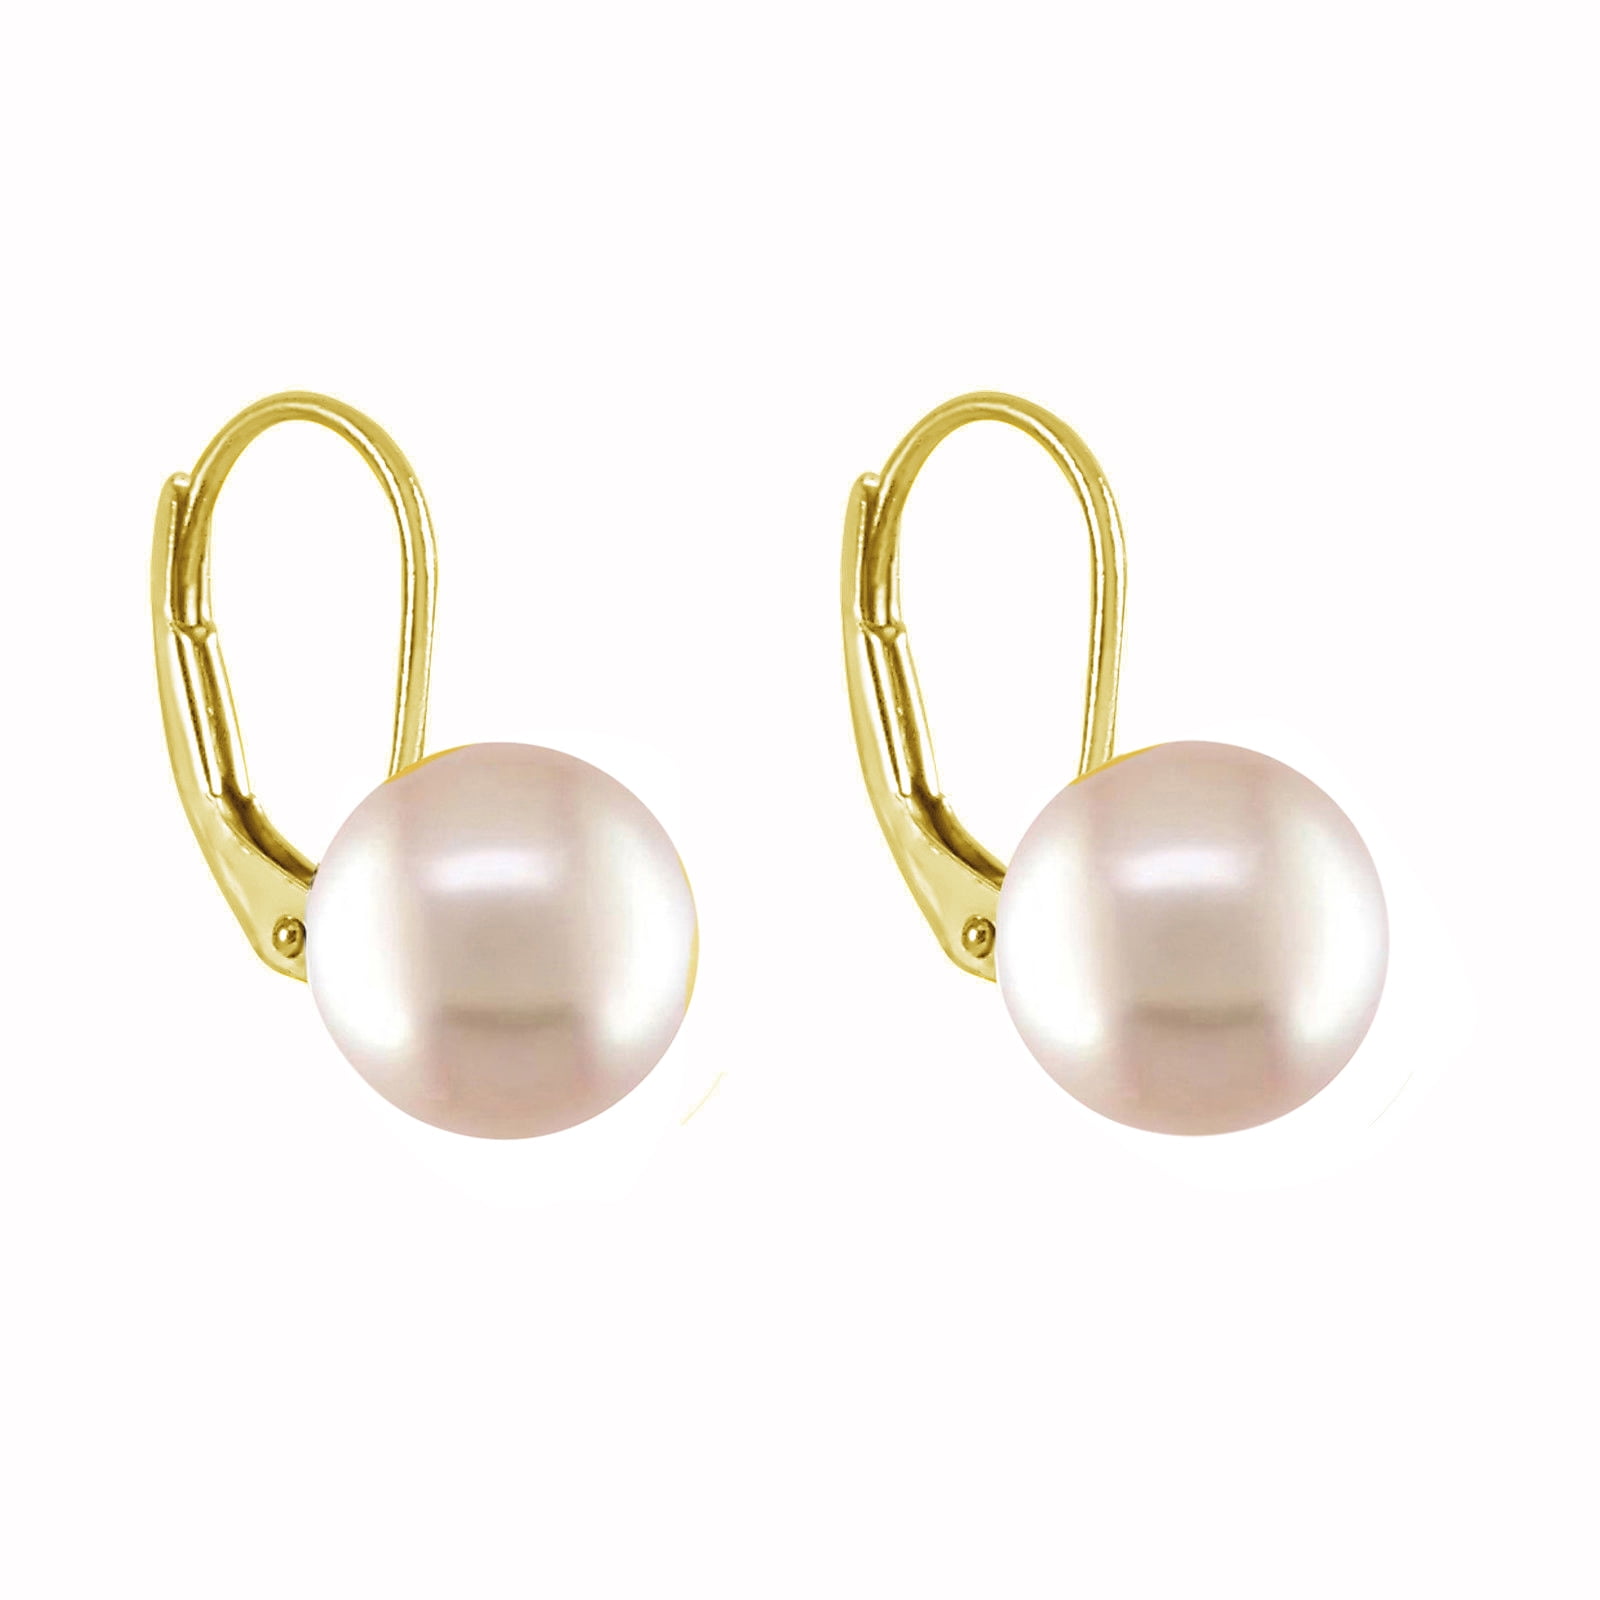 Genuine 925 silver 11-13mm freshwater pearl drop crystal Dangle earrings